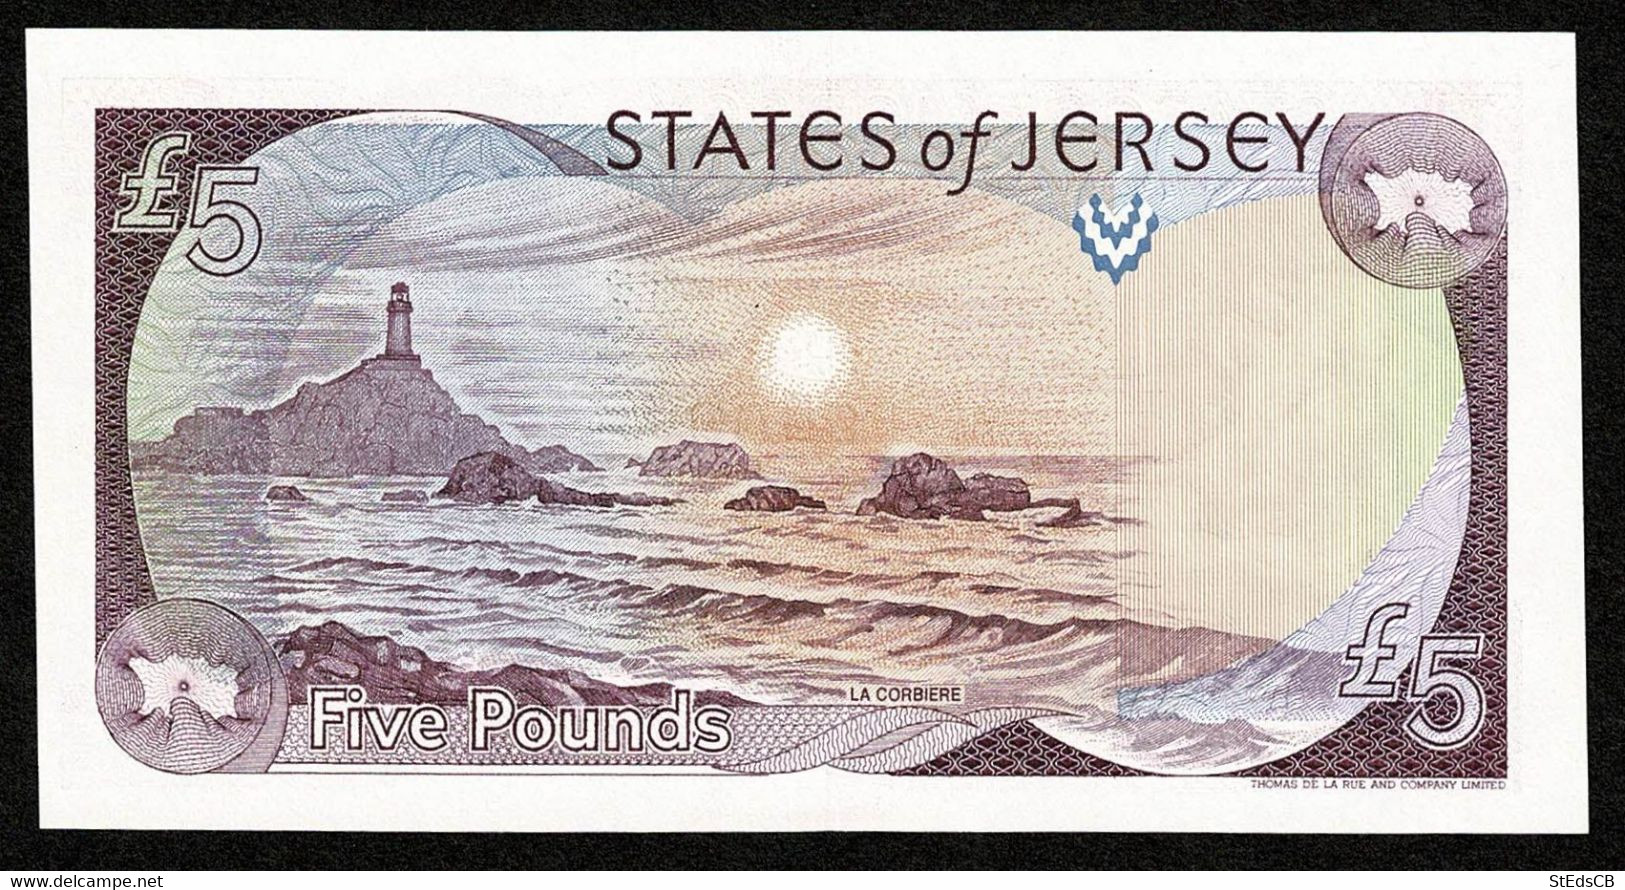 States Of Jersey * £5 * Baird * Prefix EC * P21a / JE24a * 1993 * UNC - 5 Pounds